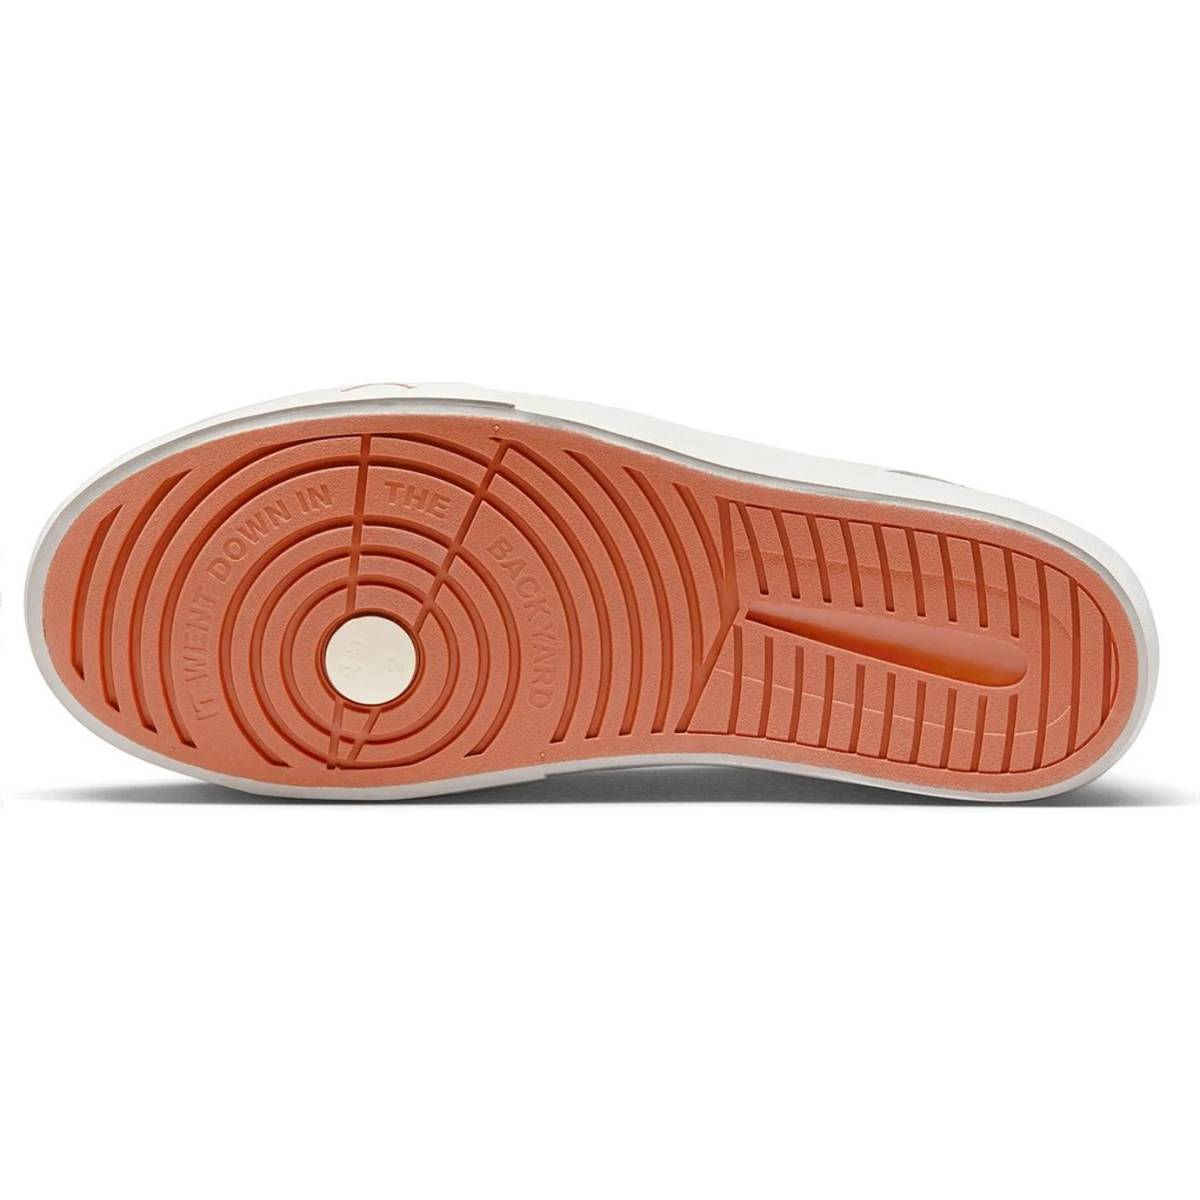 # Nike Jordan series ES Sale / last oxide / coconut milk new goods 30.0cm US12 NIKE JORDAN SERIES ES DN1856-100